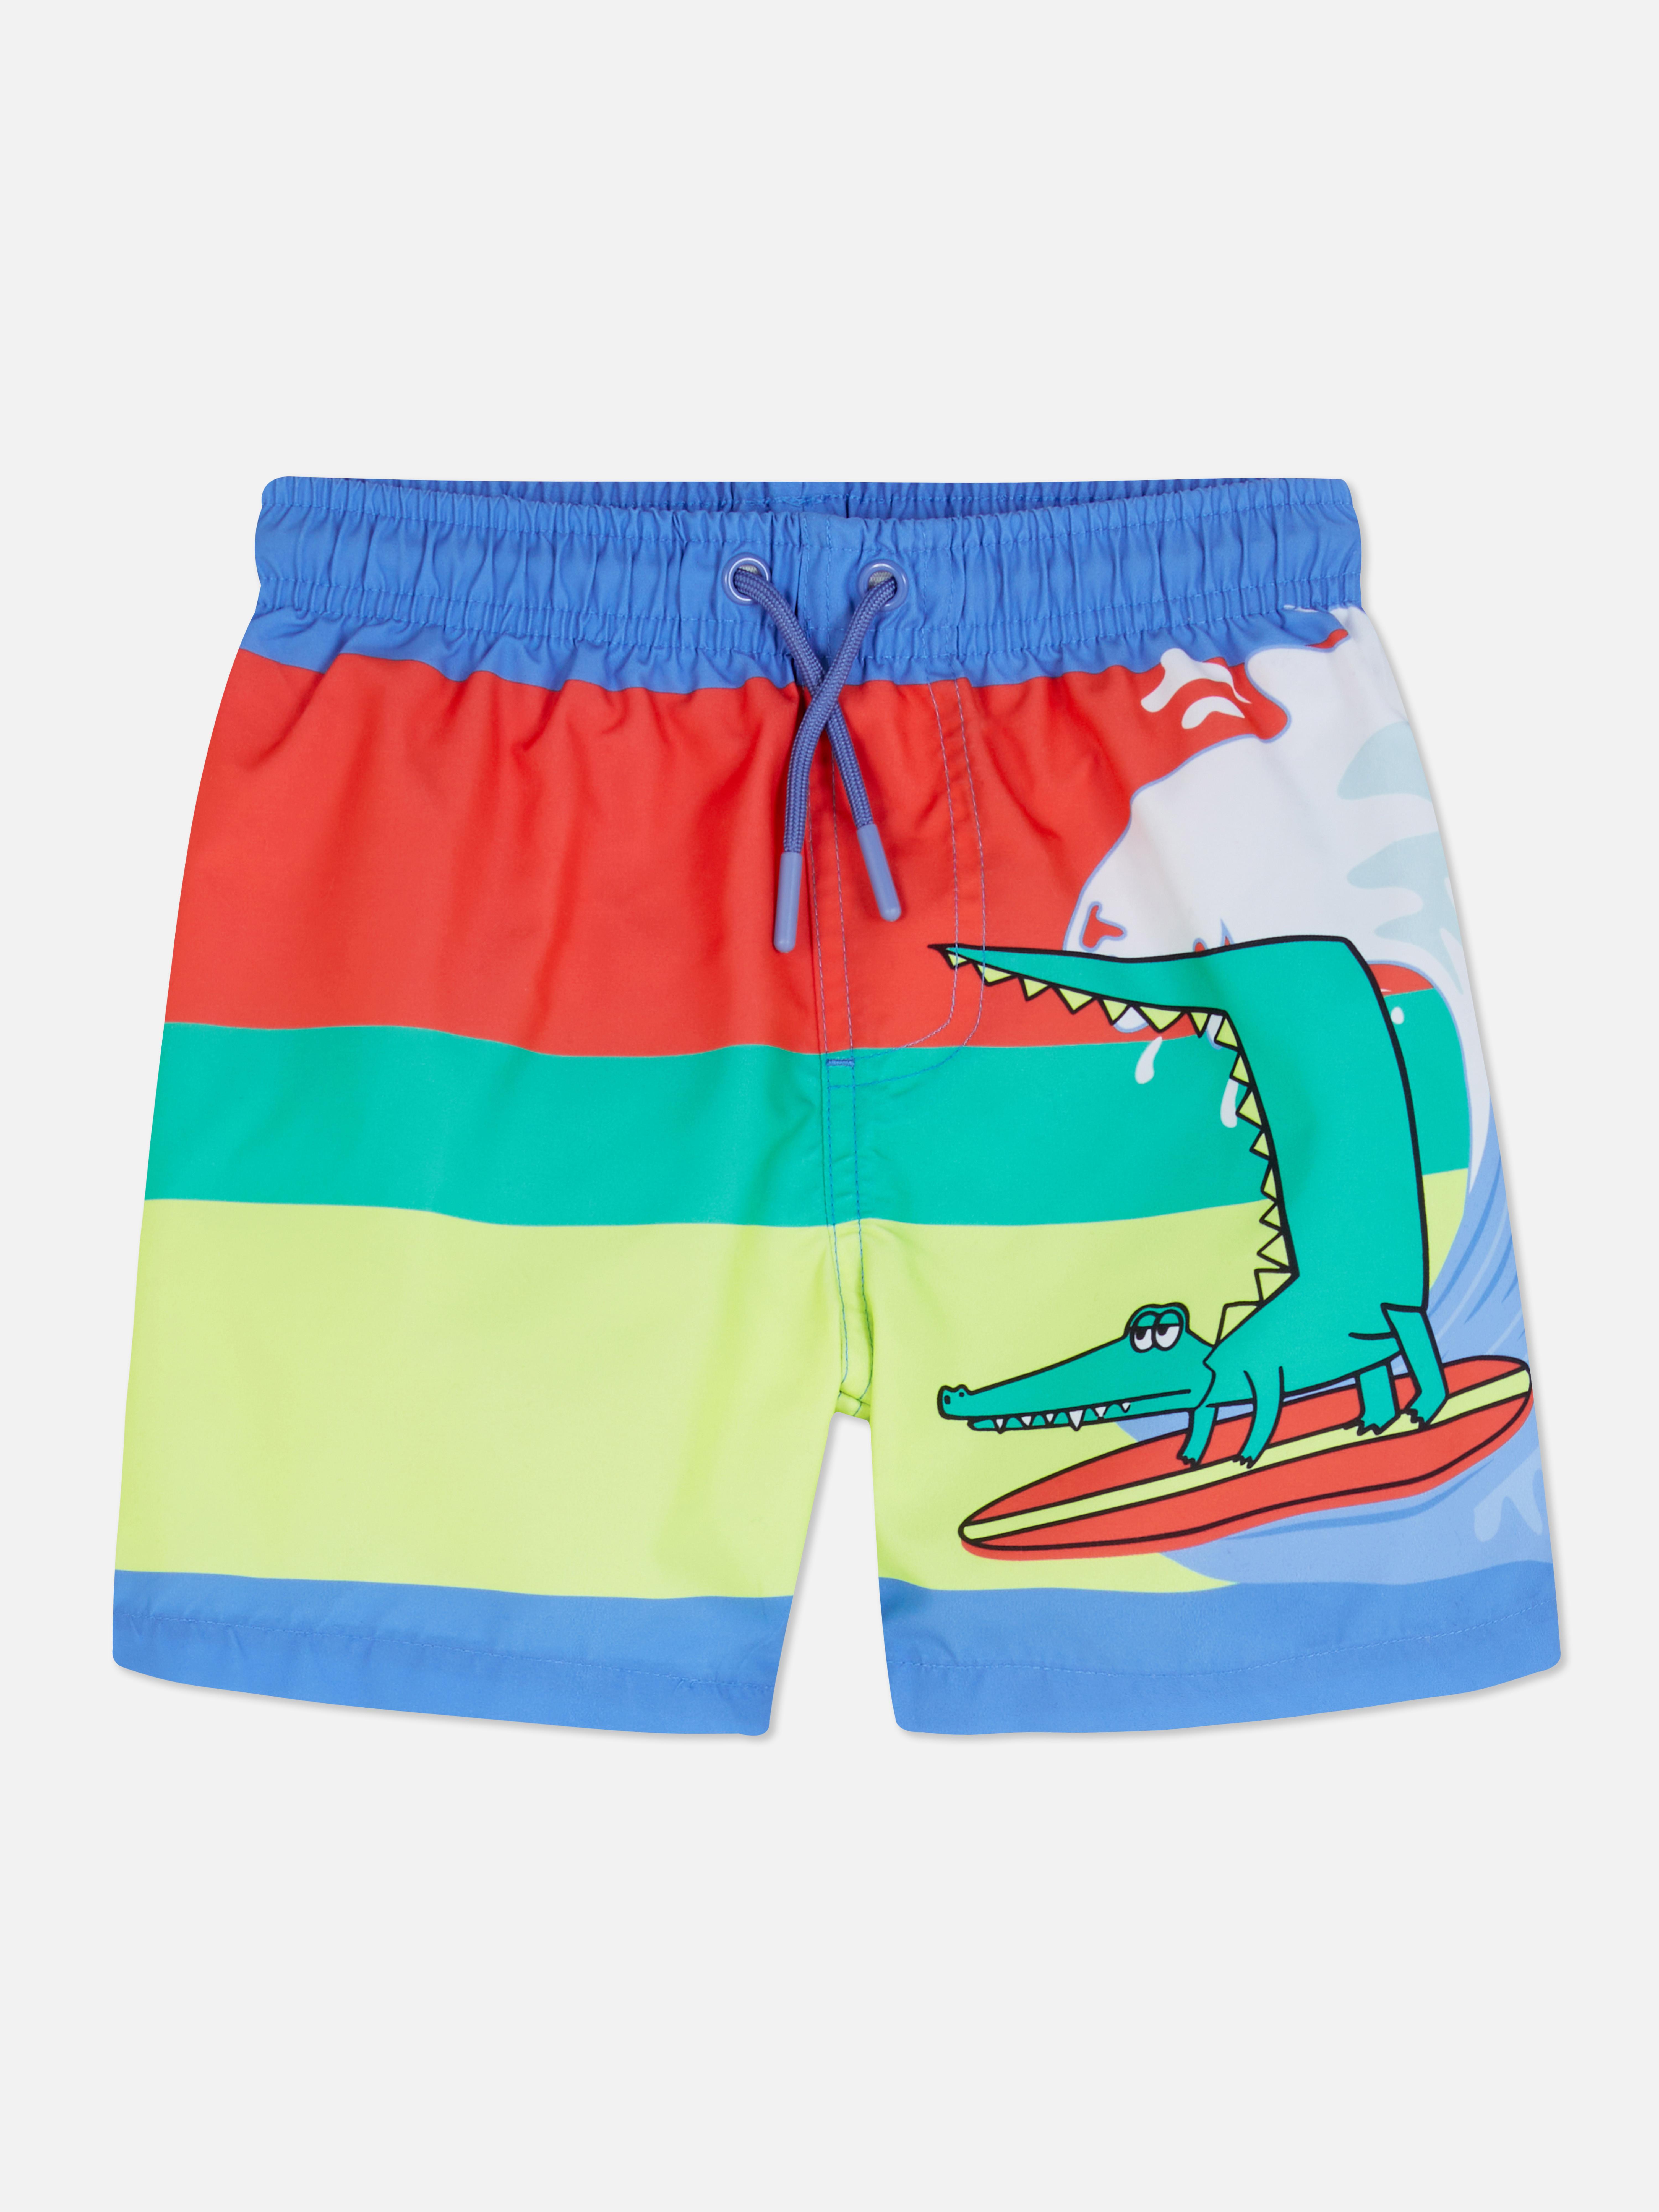 Surfer Croc Swim Shorts